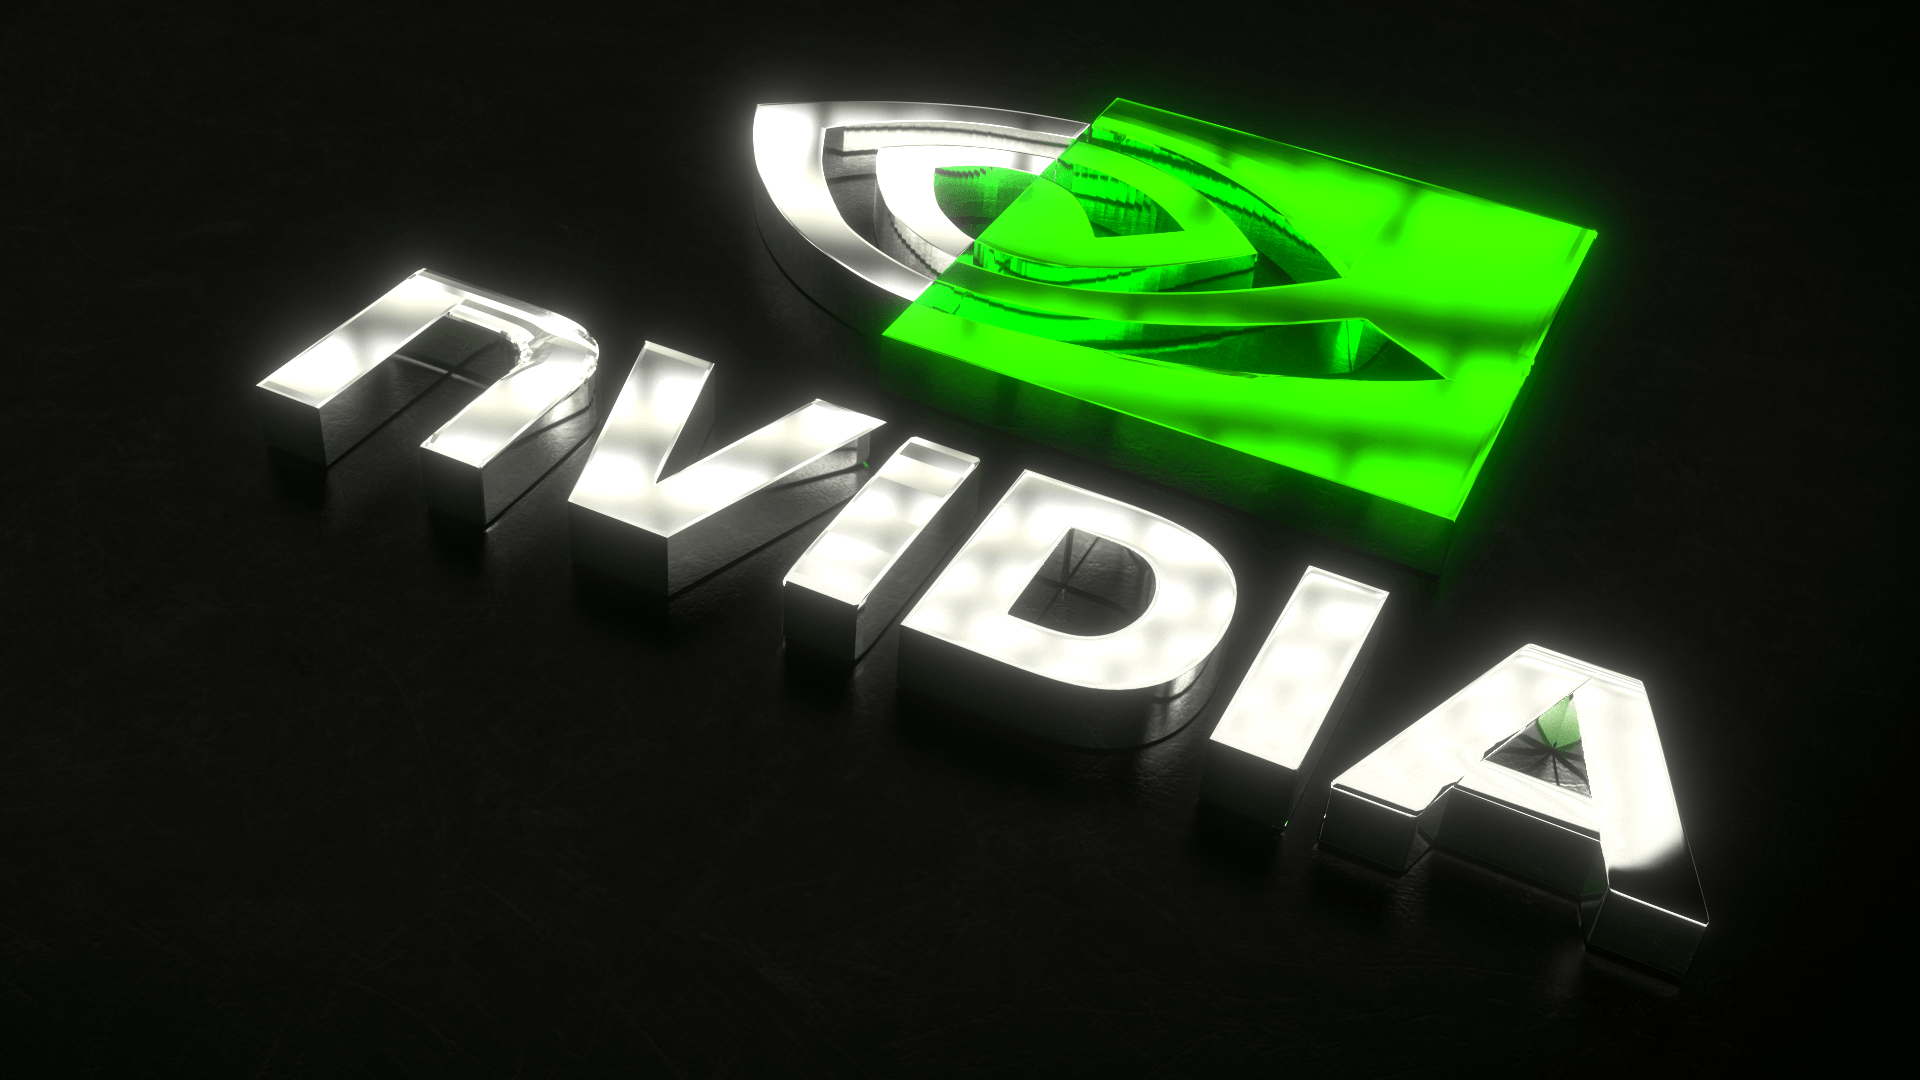 Nvidia logo 3D wallpaper hd